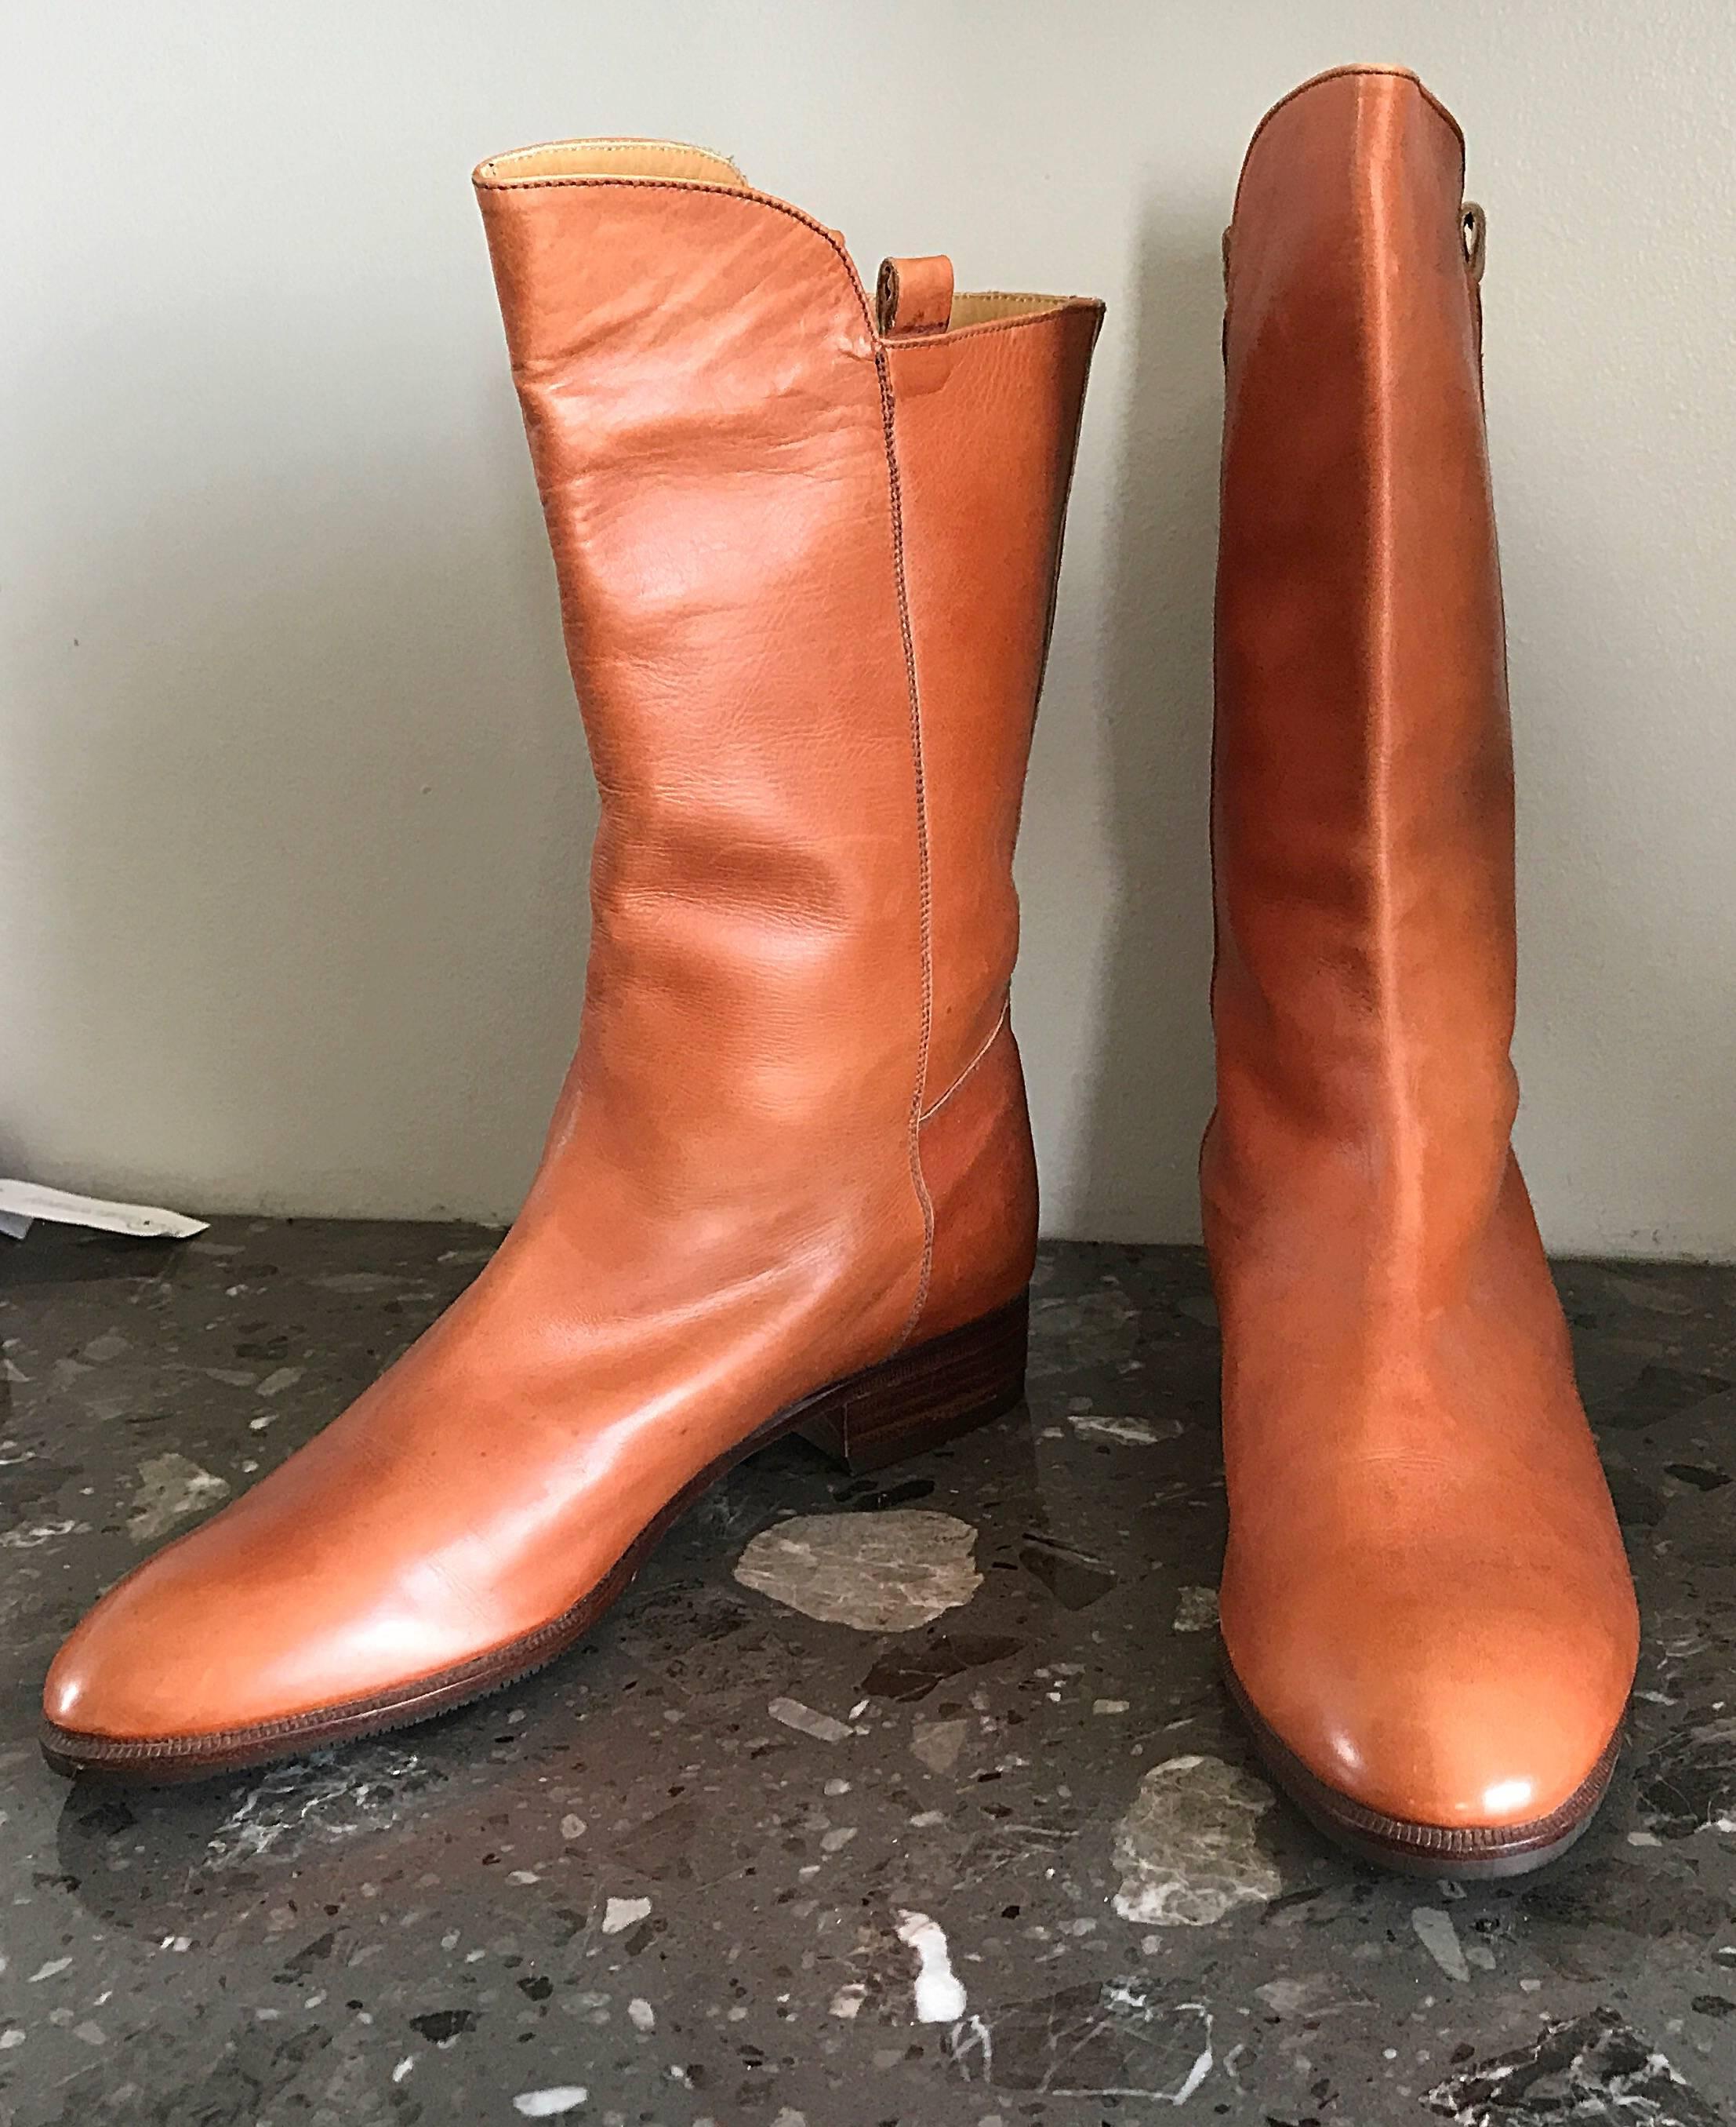 New never worn vintage 80s PERRY ELLIS tan cognac colored size 6 calf length leather boots ! La couleur selle s'accorde littéralement avec tout ! Il s'enfile simplement et est doté d'une semelle en cuir. Ajoute une touche de couleur à une simple